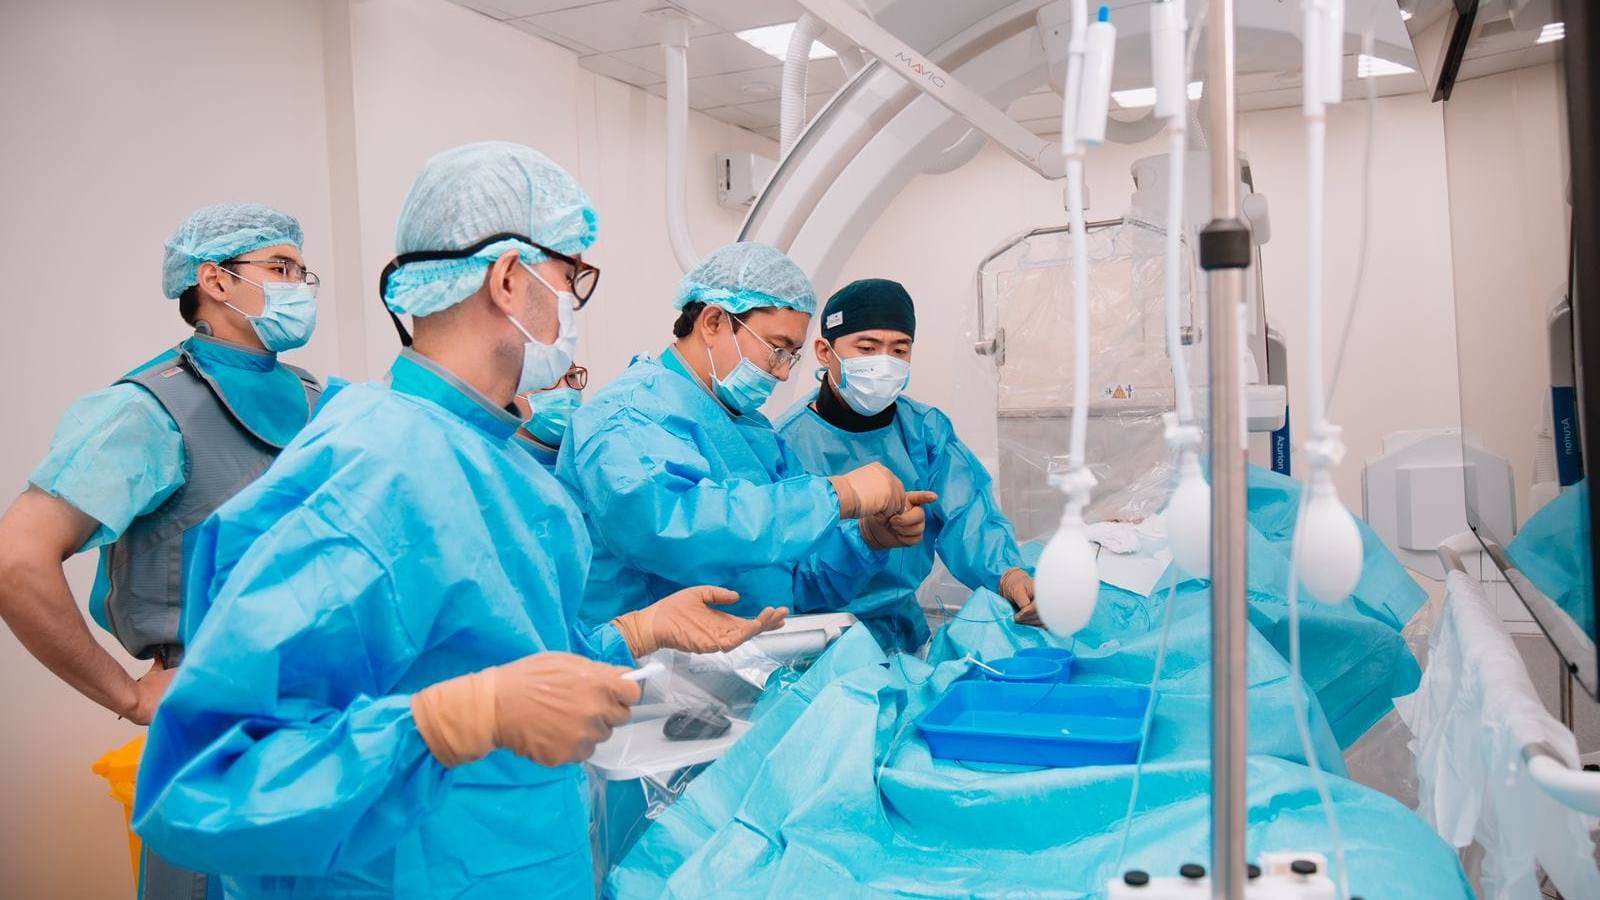 За три дня врачи Медицинского центра УДП РК провели 24 сложные операции в Карагандинской области